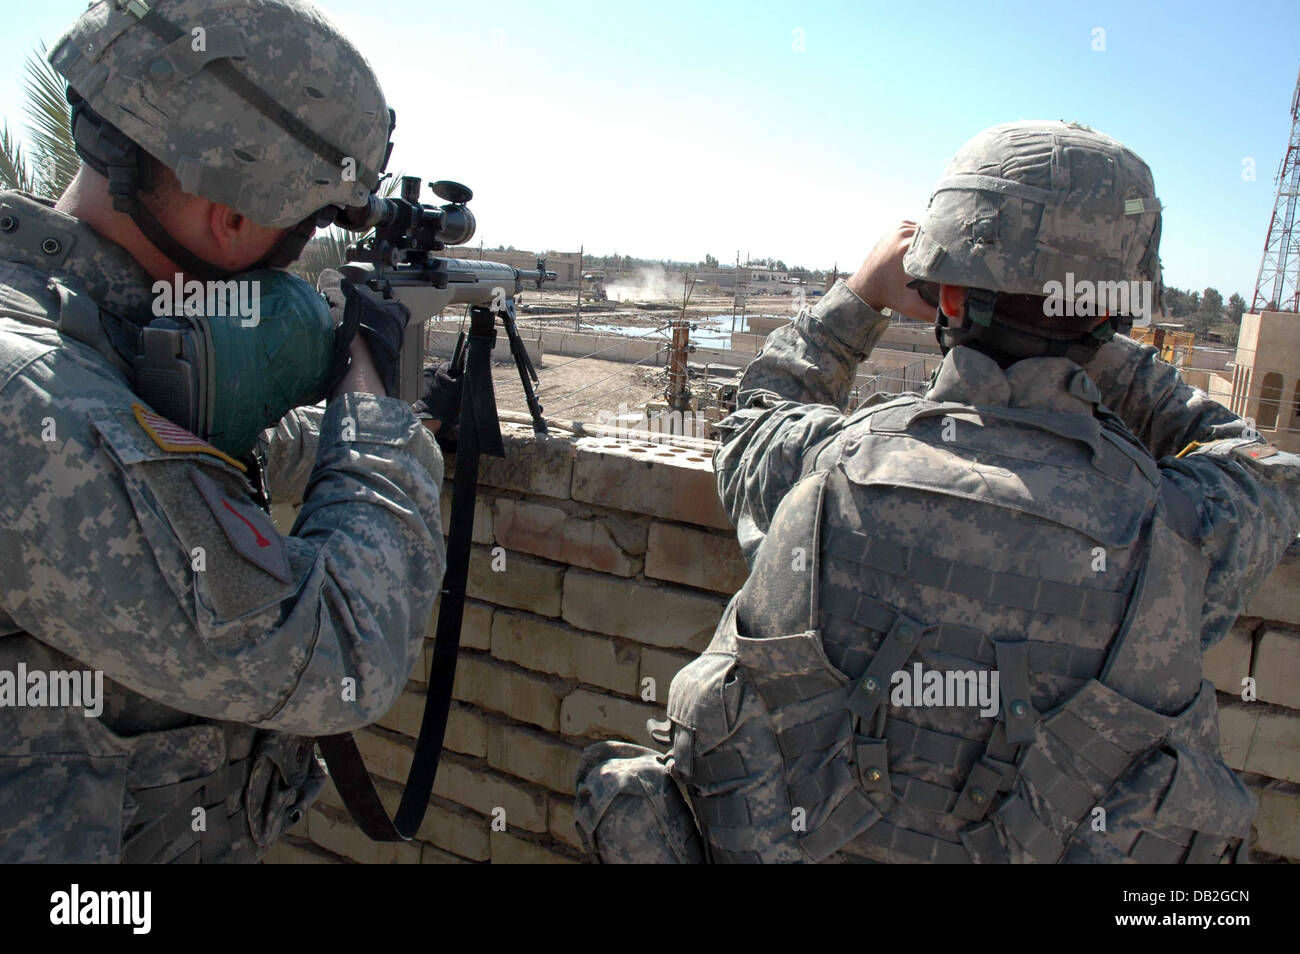 US-tireurs de la 1re Division d'infanterie du 9e bataillon du génie guard le nouveau Centre de sécurité commune à partir d'un haut toit à Bagdad, Iraq, mars 2007. Photo : Carl Schulze Banque D'Images